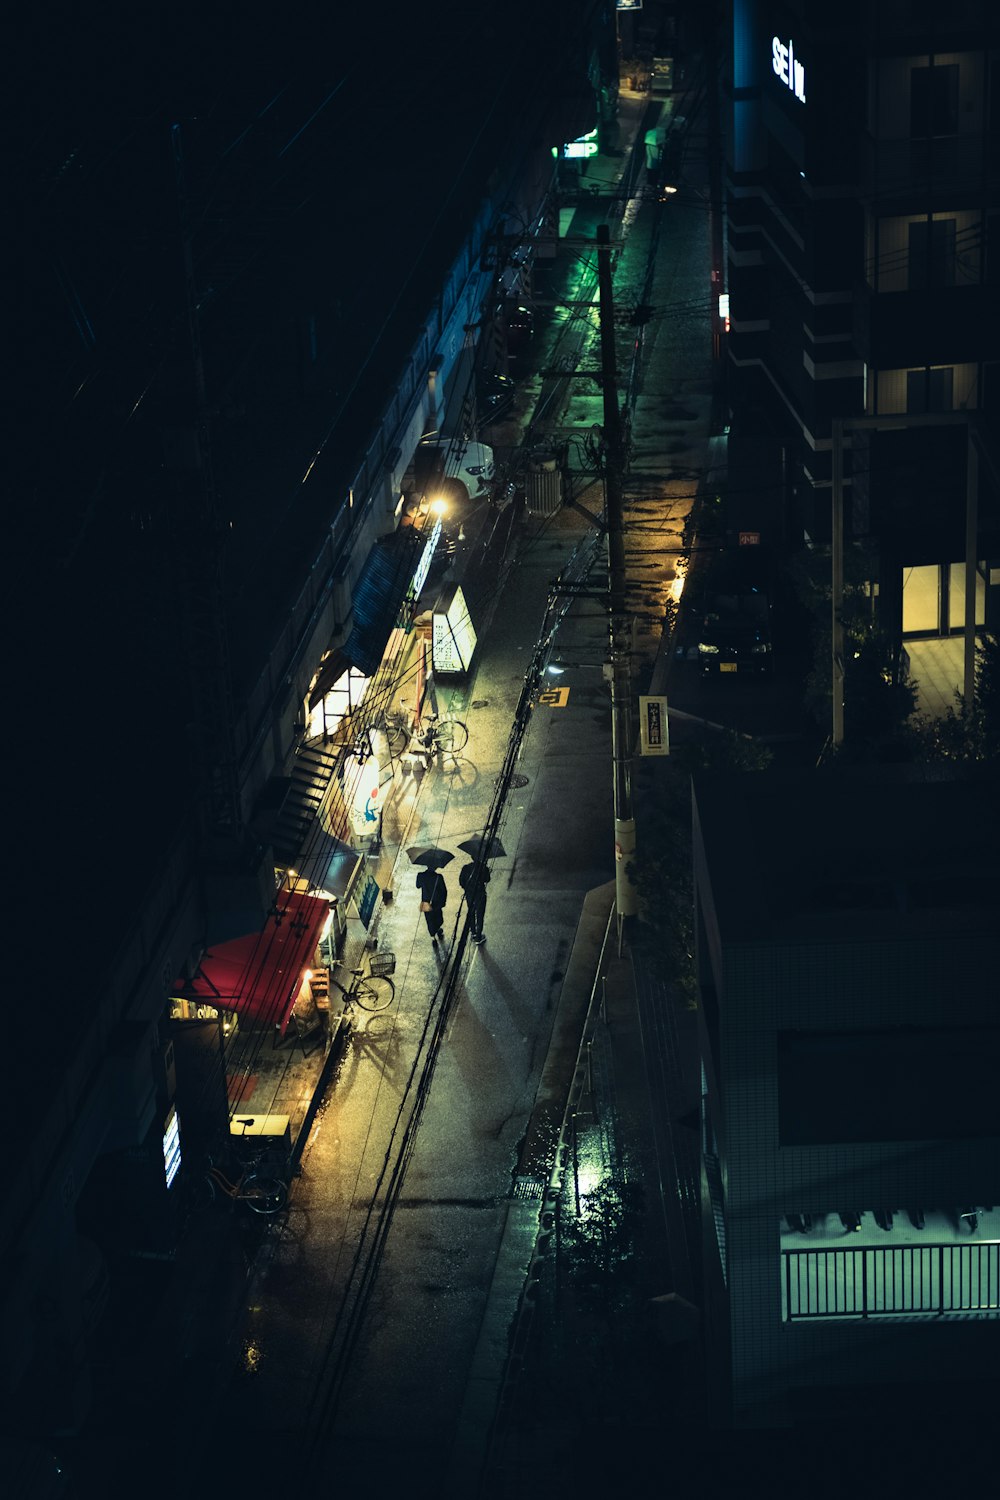 歩道を歩く人々で賑わう夜の街路